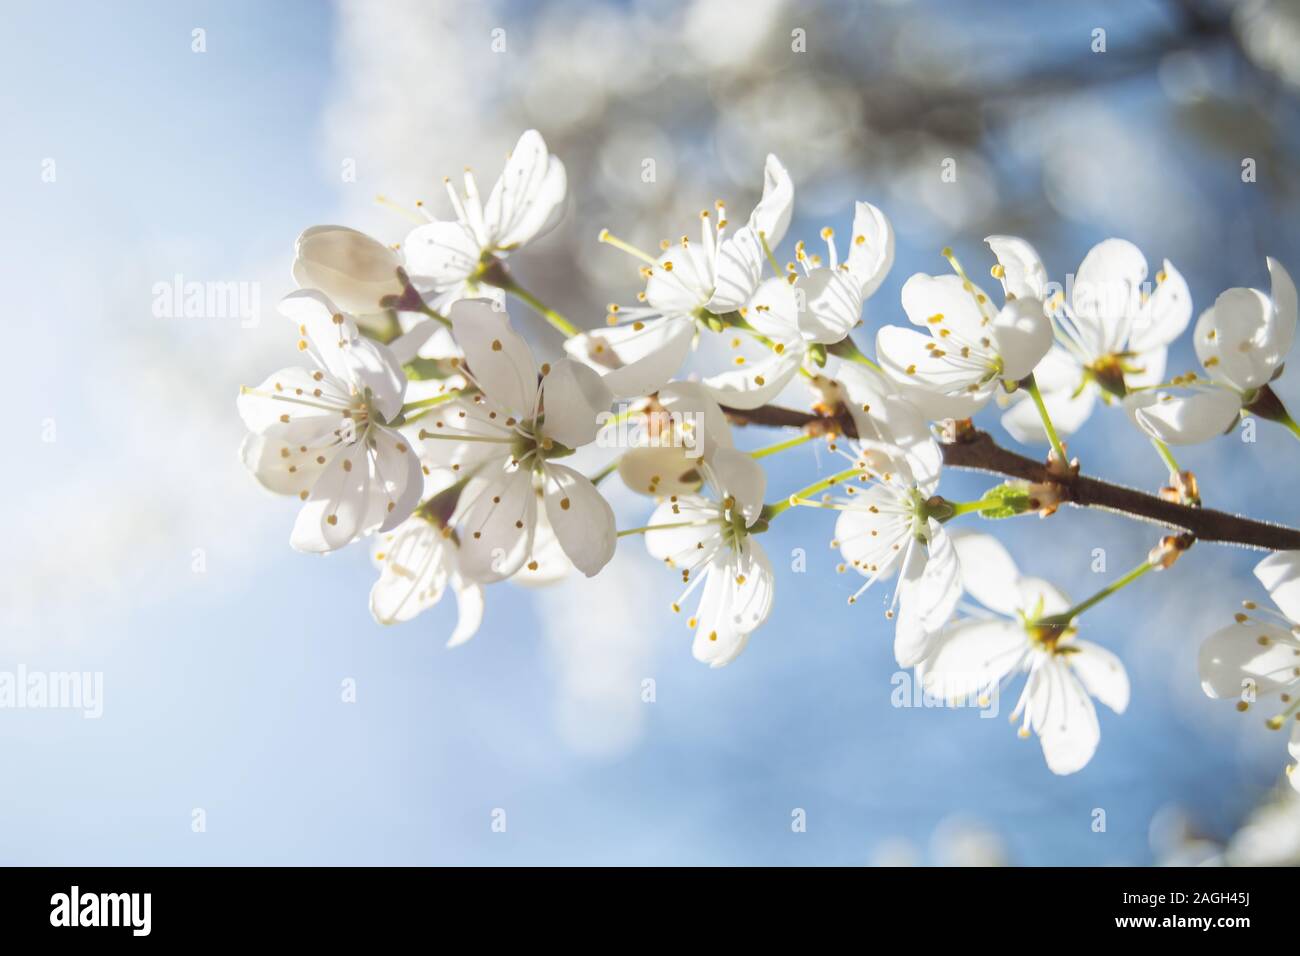 Niederlassung von Cherry Blumen durch starke Sonneneinstrahlung auf eine enge beleuchtet mit blauen Himmel im Hintergrund - Frühling anzeigen Stockfoto